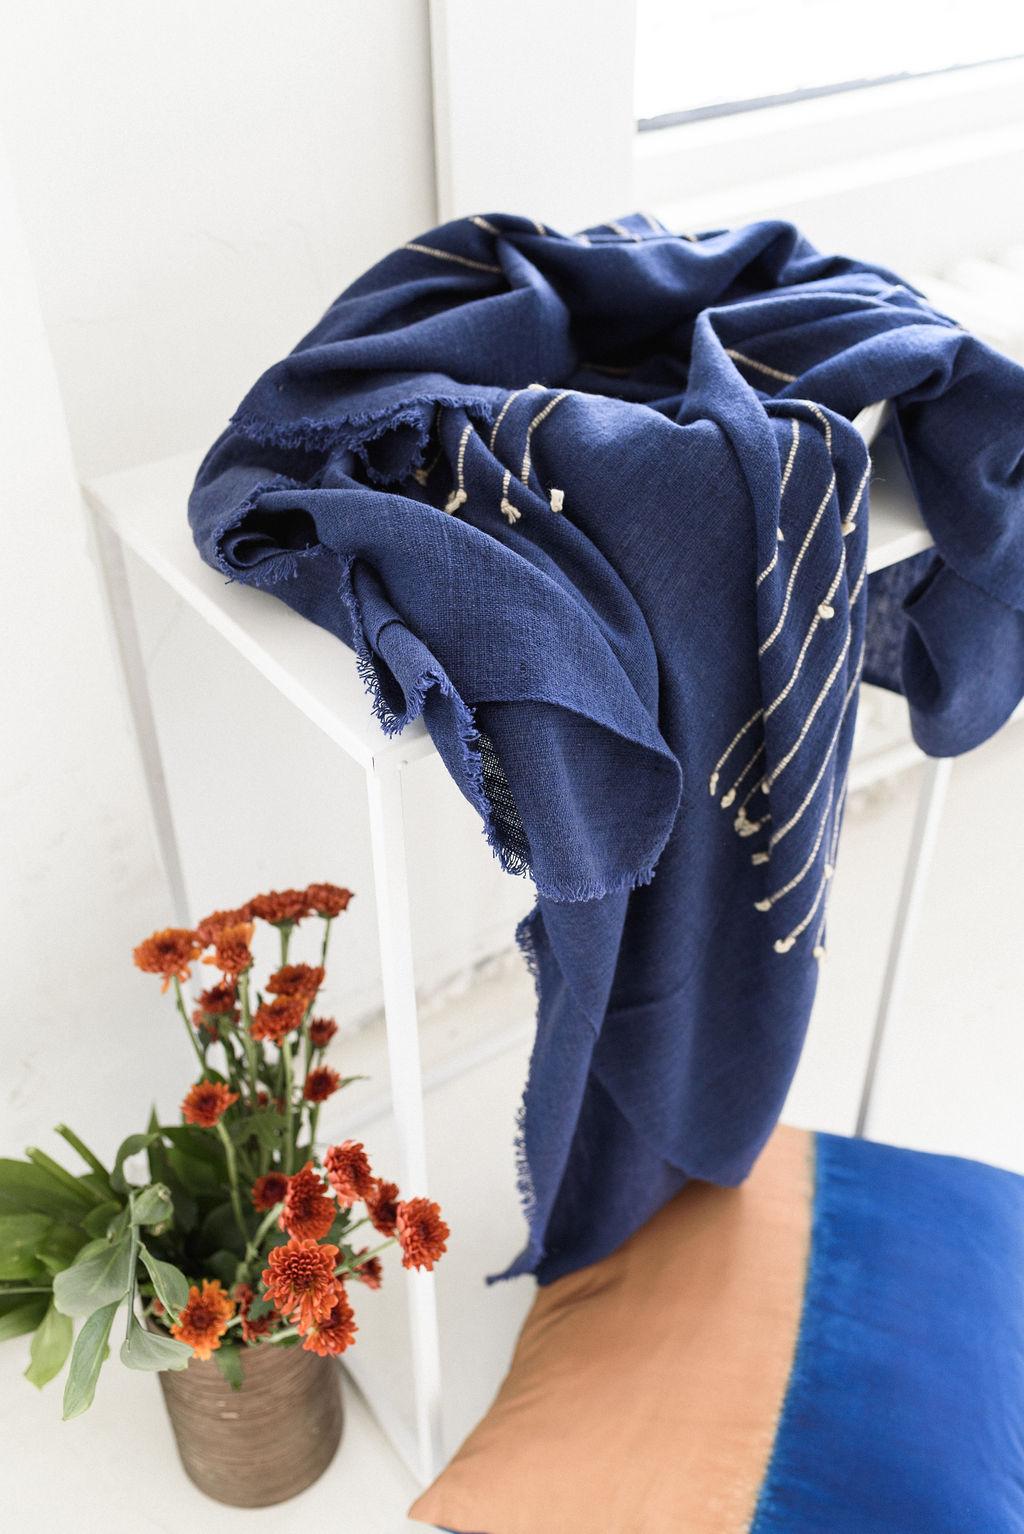 Rosewood Indigo Handloom Queen Size Bedpsread / Coverlet in Stripes Design 2